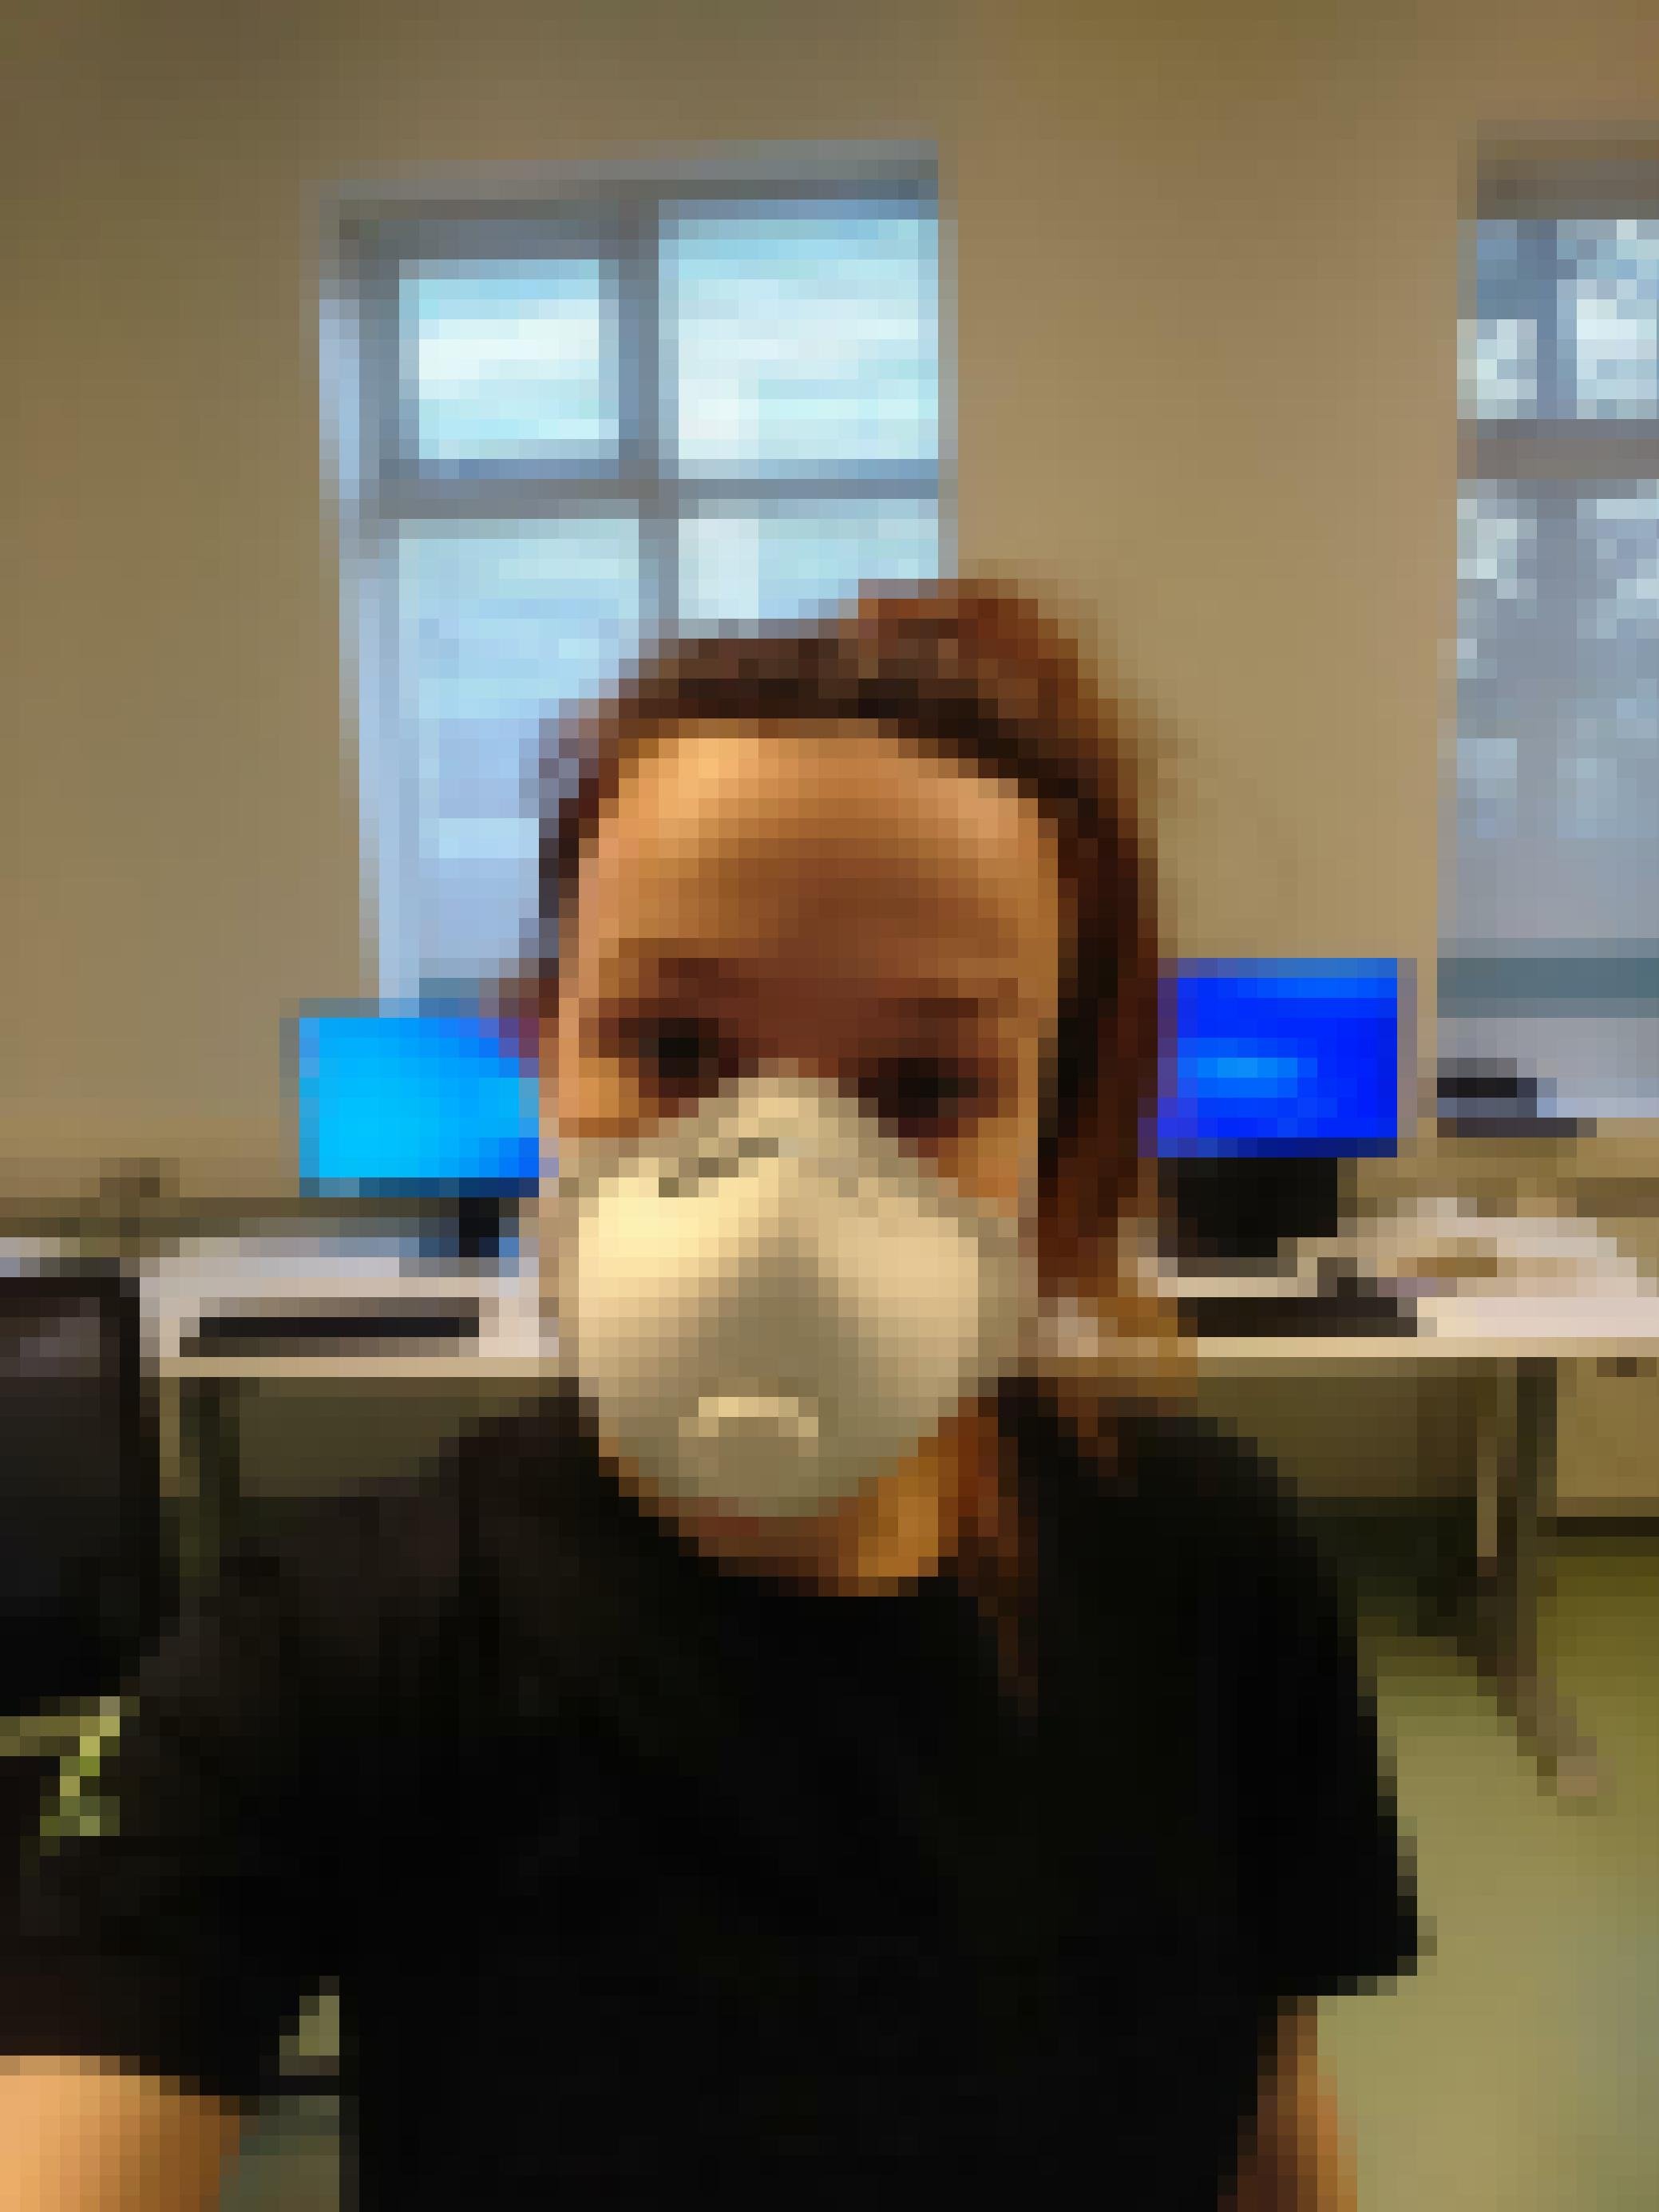 Laura González mit Maske bei der Arbeit